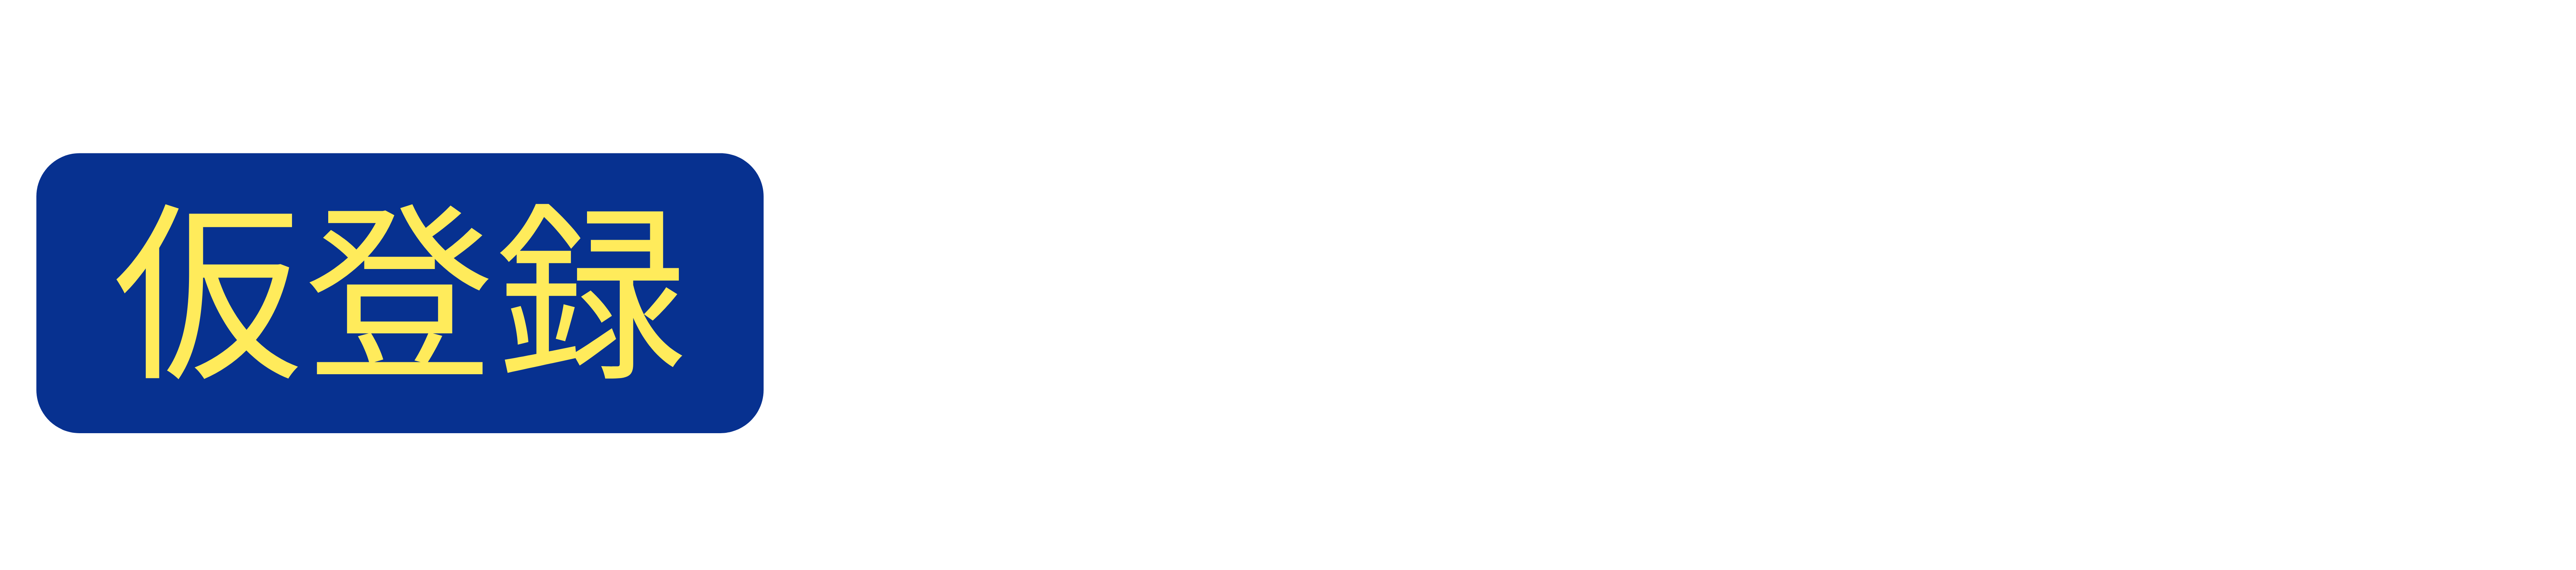 [仮登録] 静岡ブルーレヴズラグビースクール入会お申込み